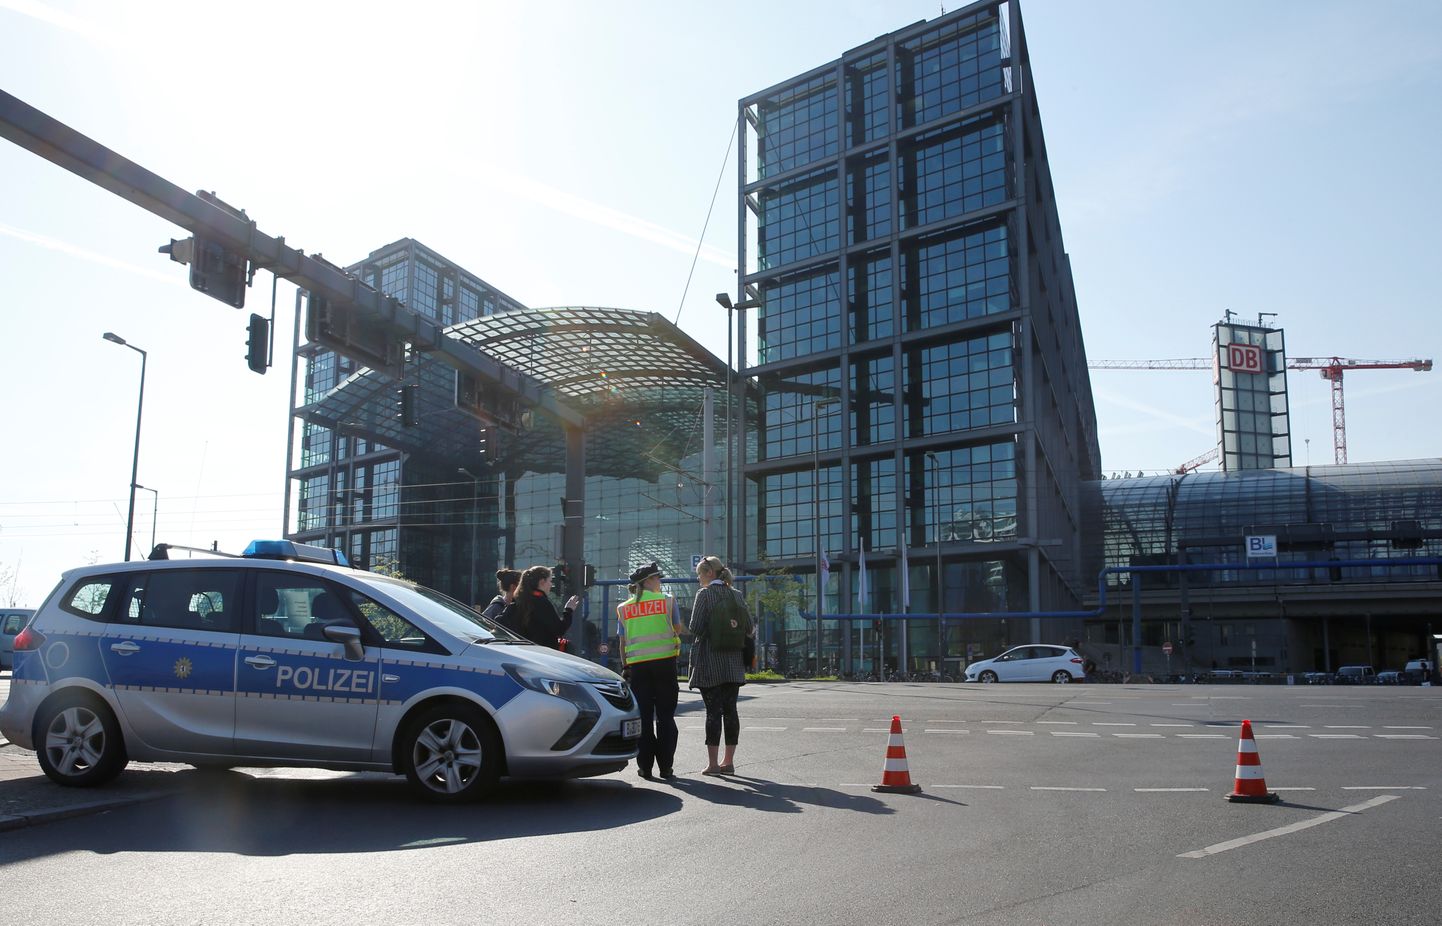 Полиция заблокировала дорогу у главного вокзала в Берлине из-за обнаруженной поблизости бомбы.